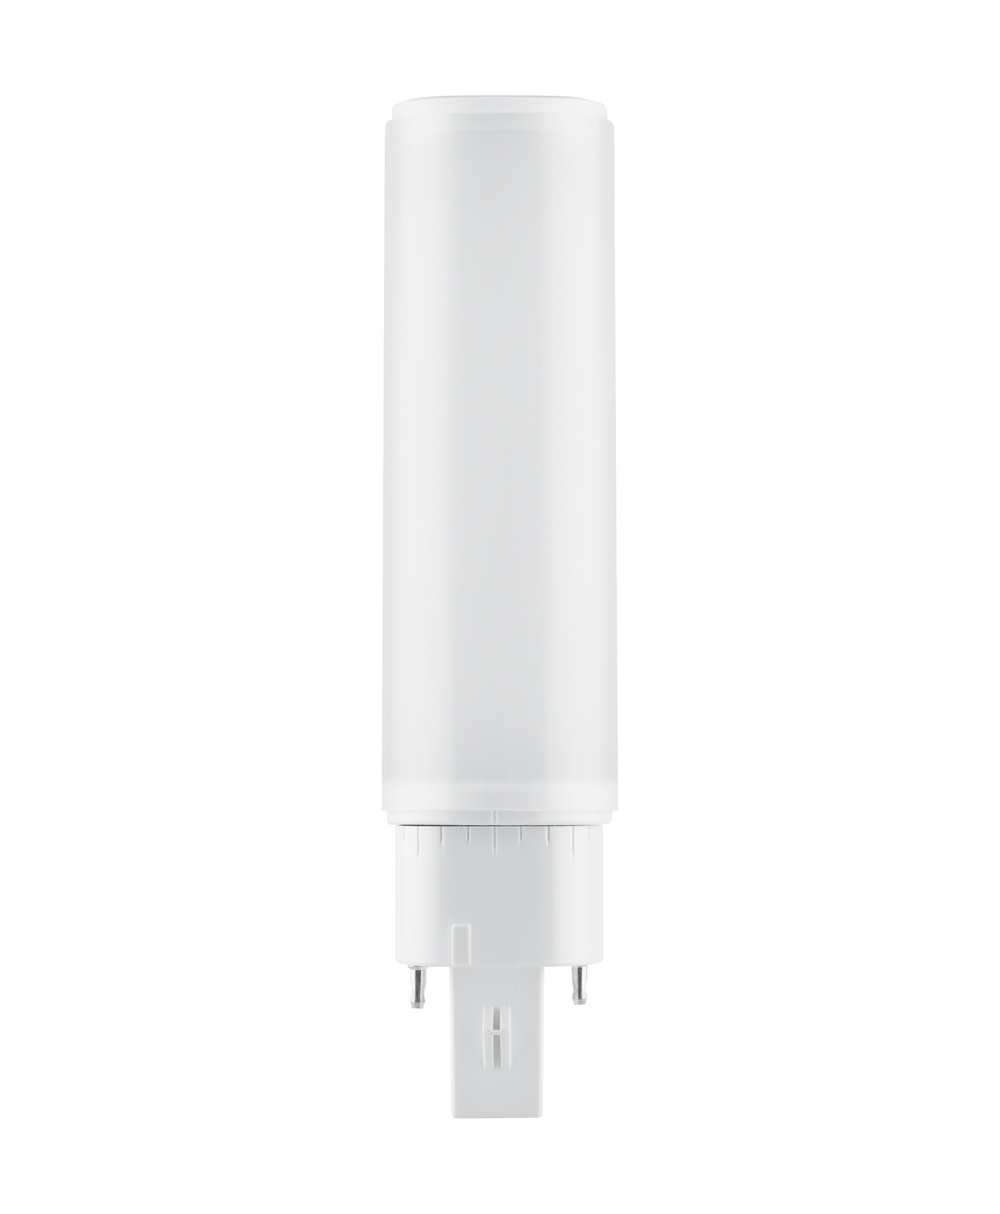 Ledvance LED lamp Osram DULUX D/E LED HF & AC Mains 6 W/4000 K – replacement for KLLNI 13 W